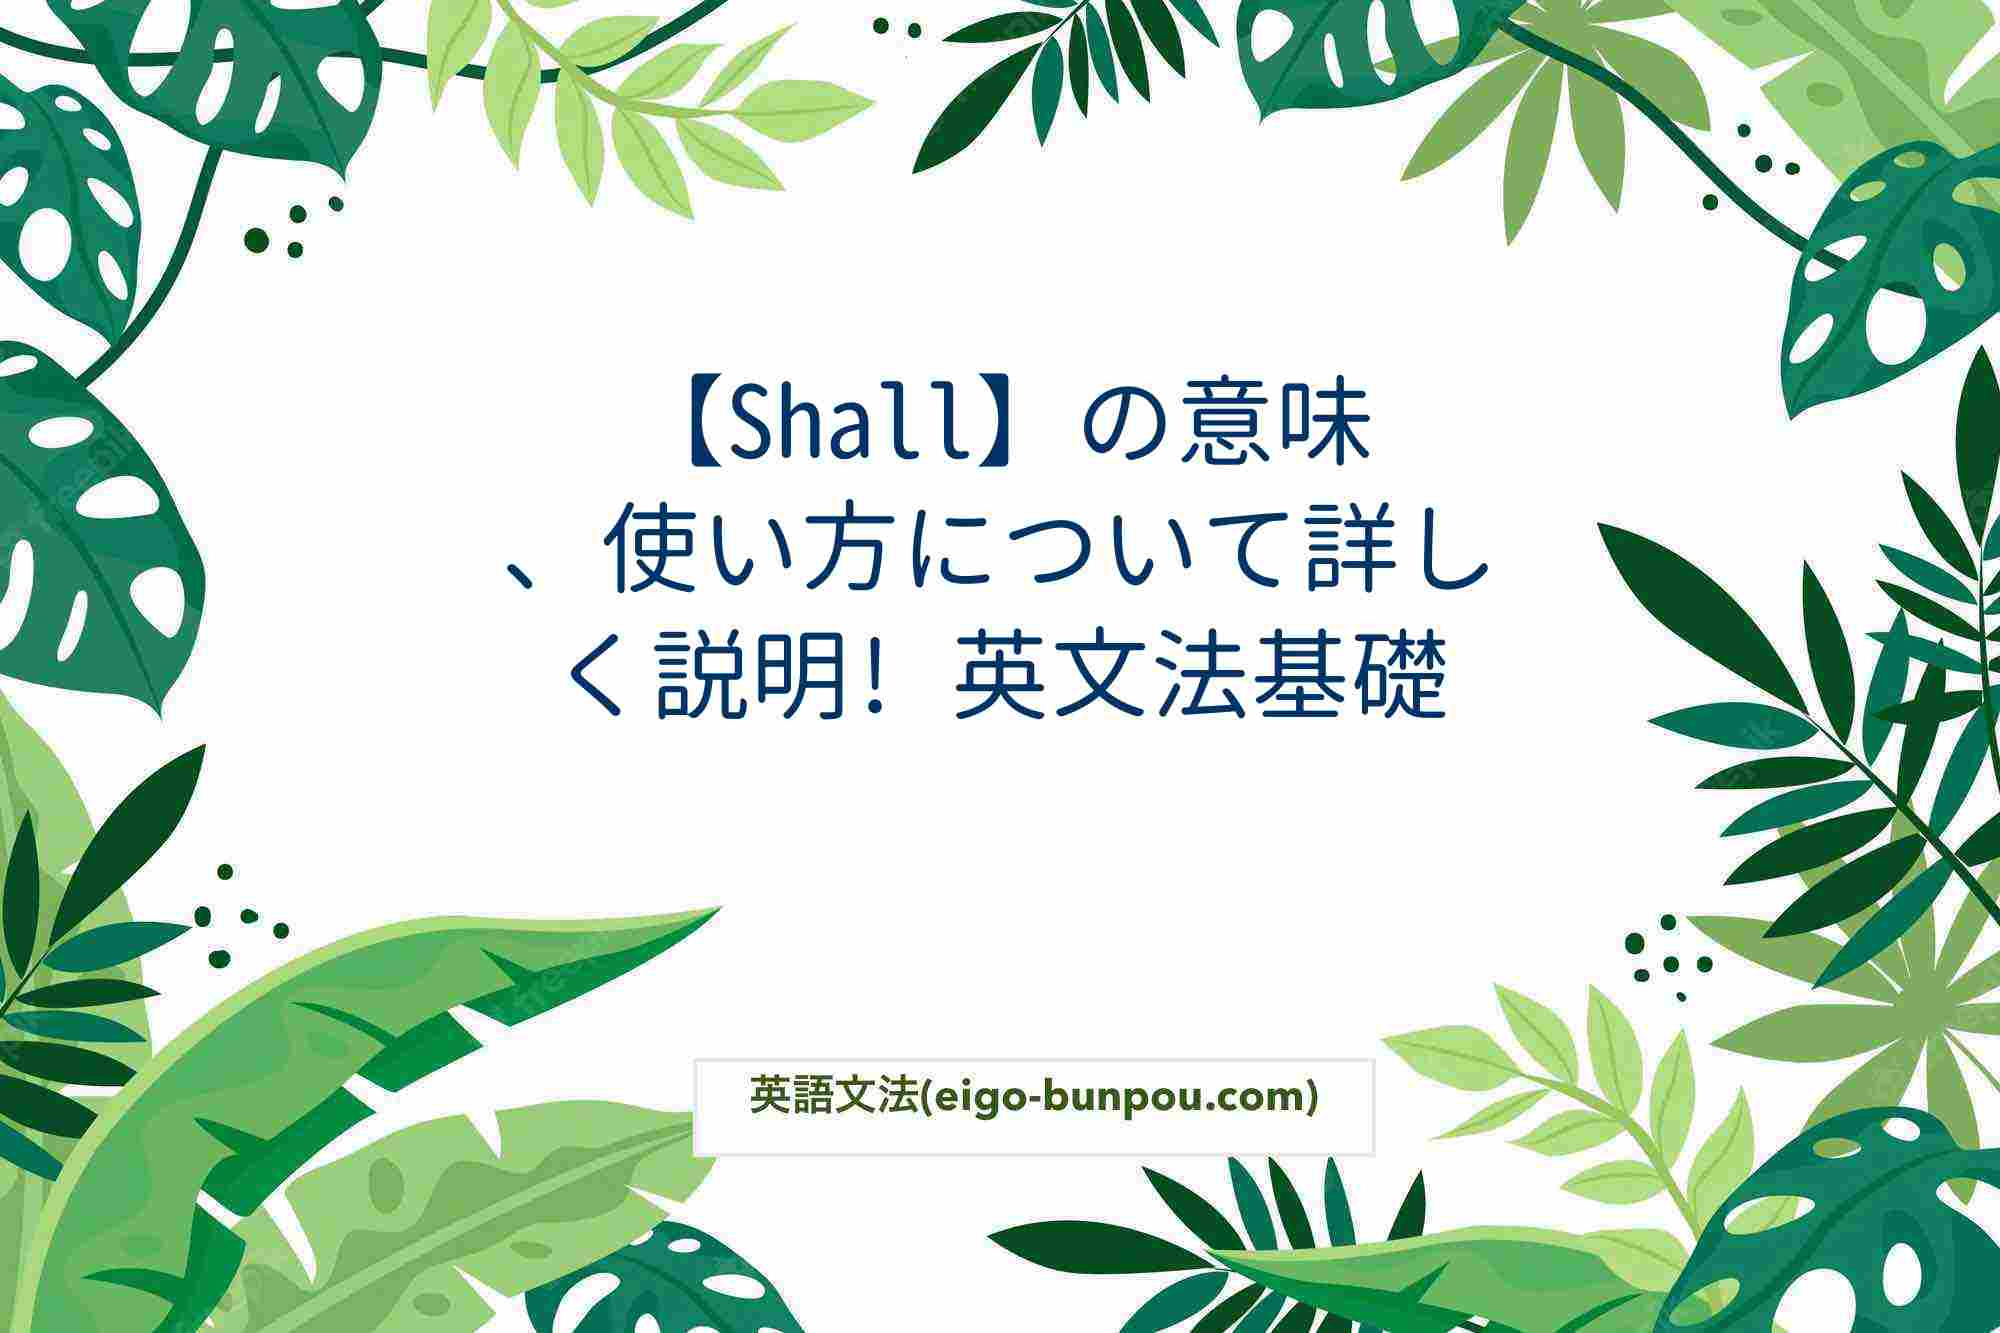 【Shall】の意味、使い方について詳しく説明! 英文法基礎